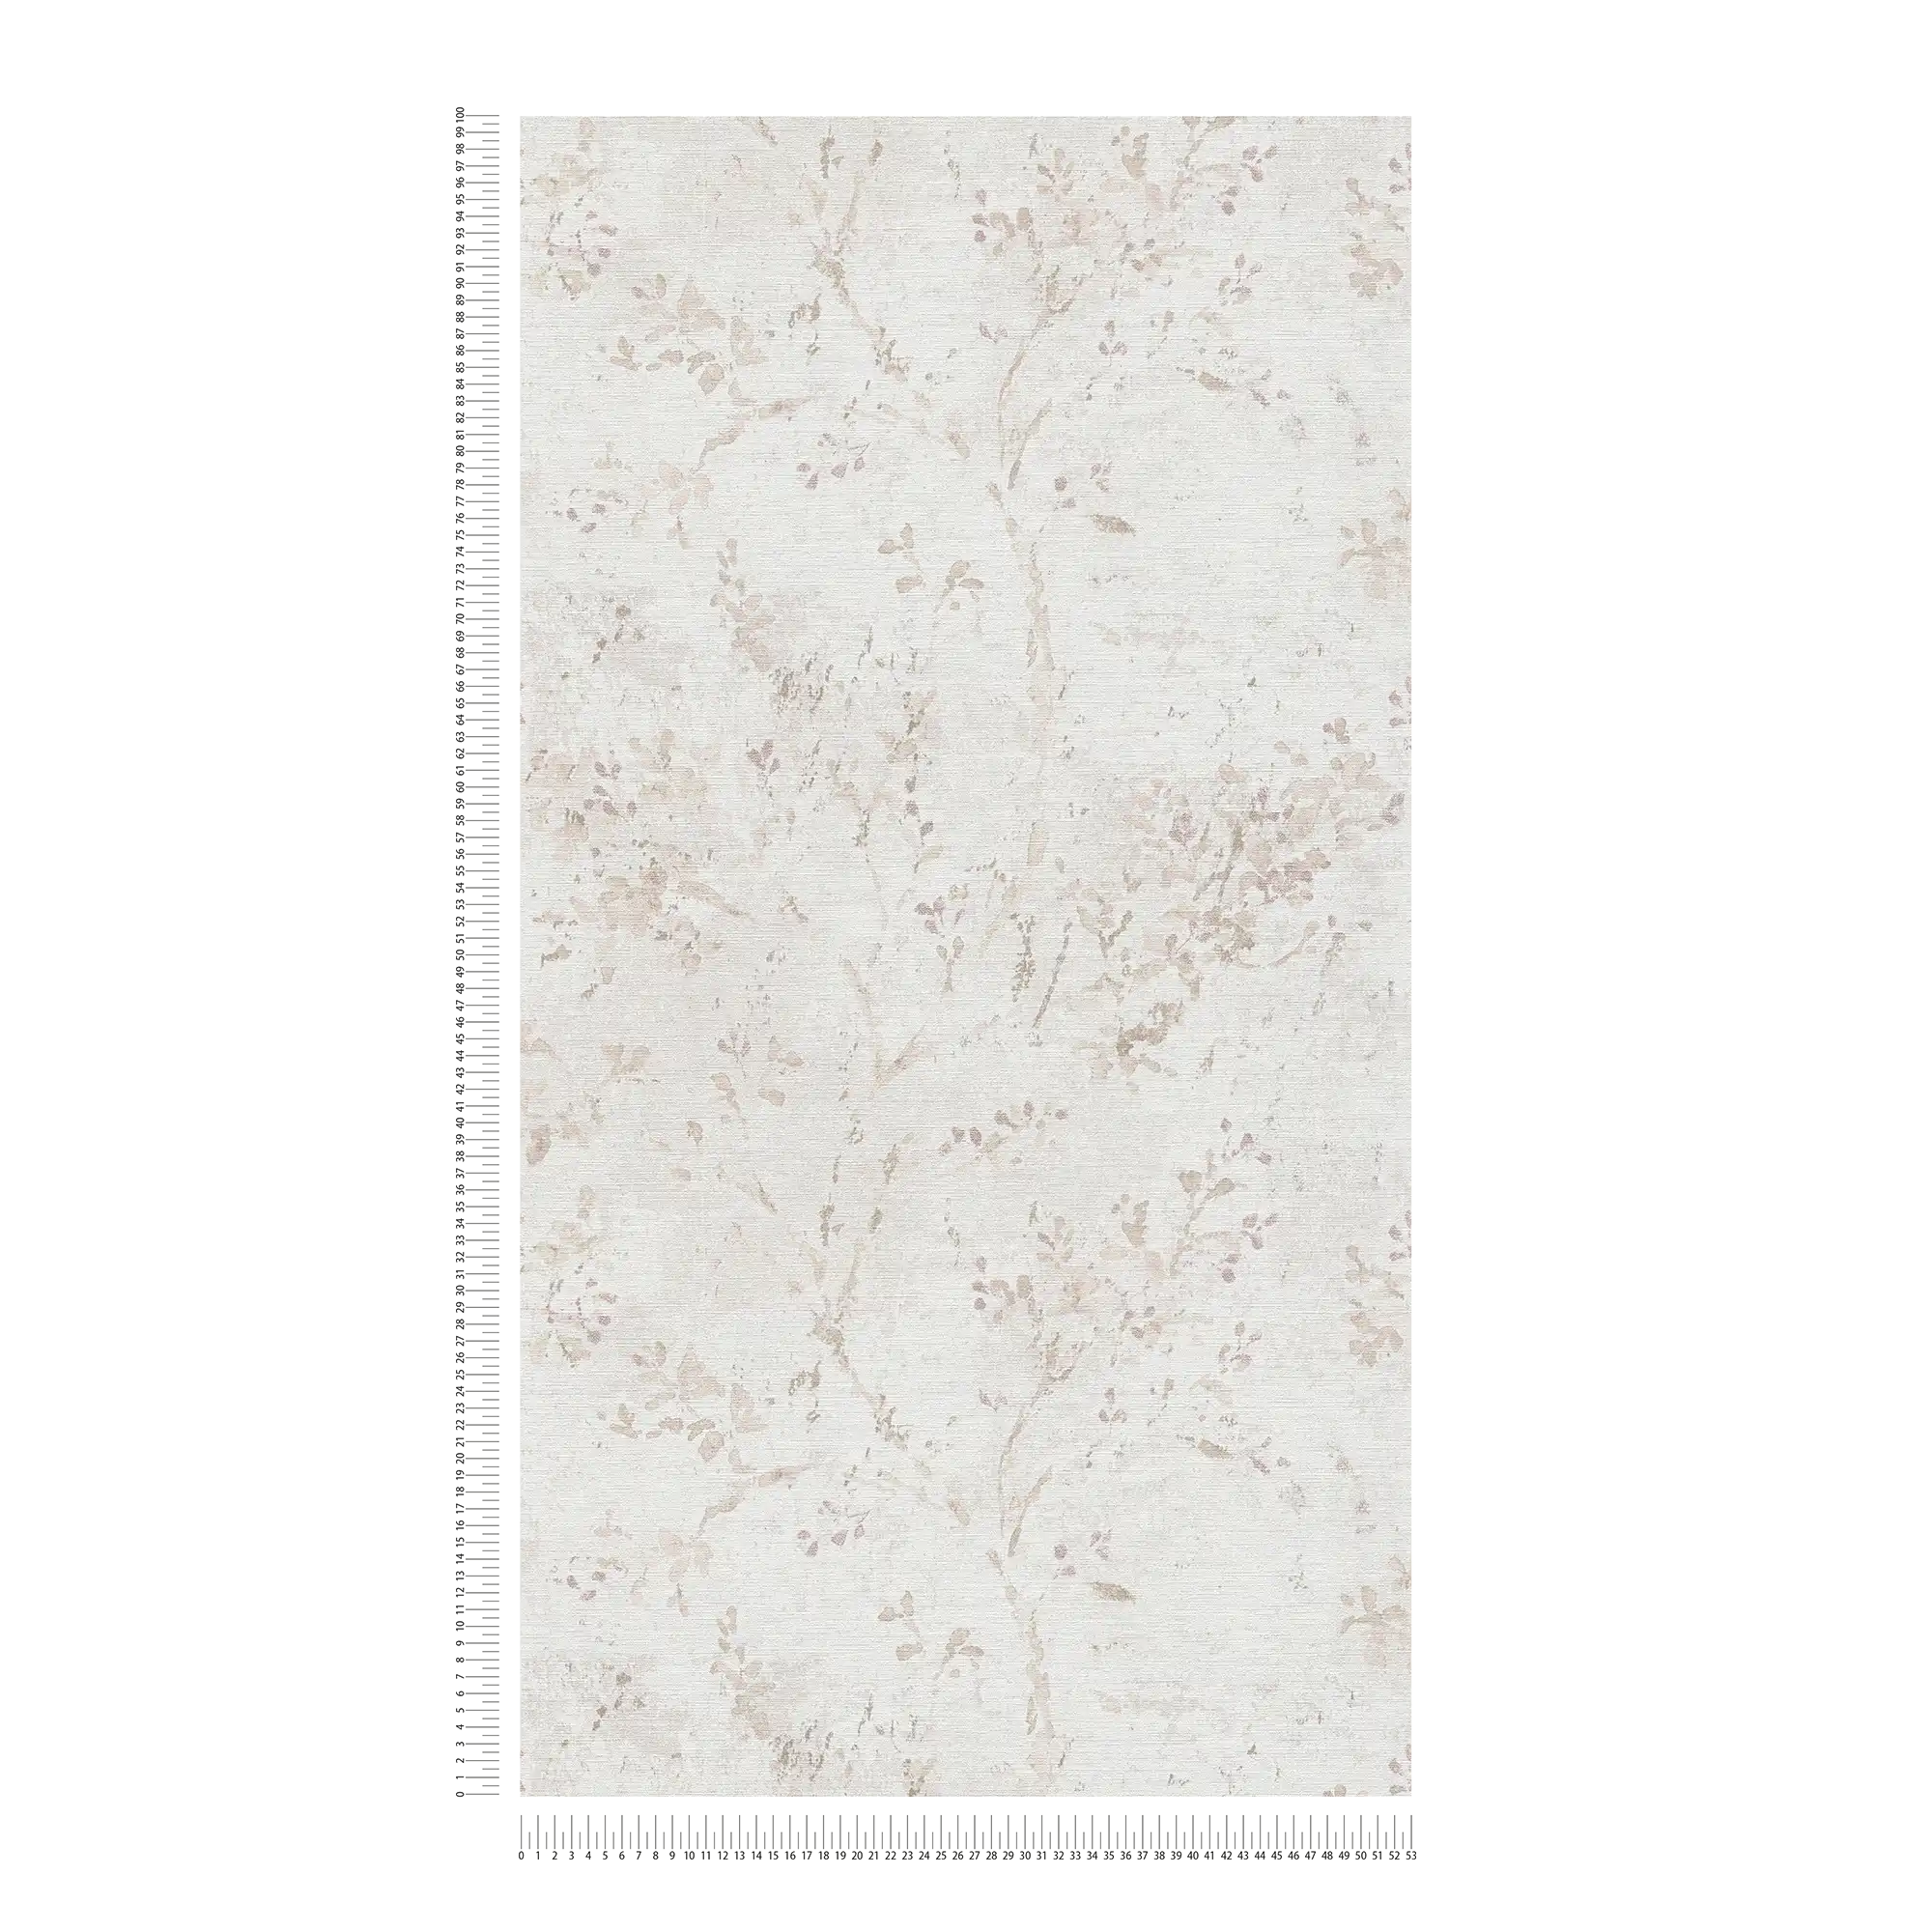             papier peint en papier intissé avec motif floral fantaisie - gris, beige, violet
        